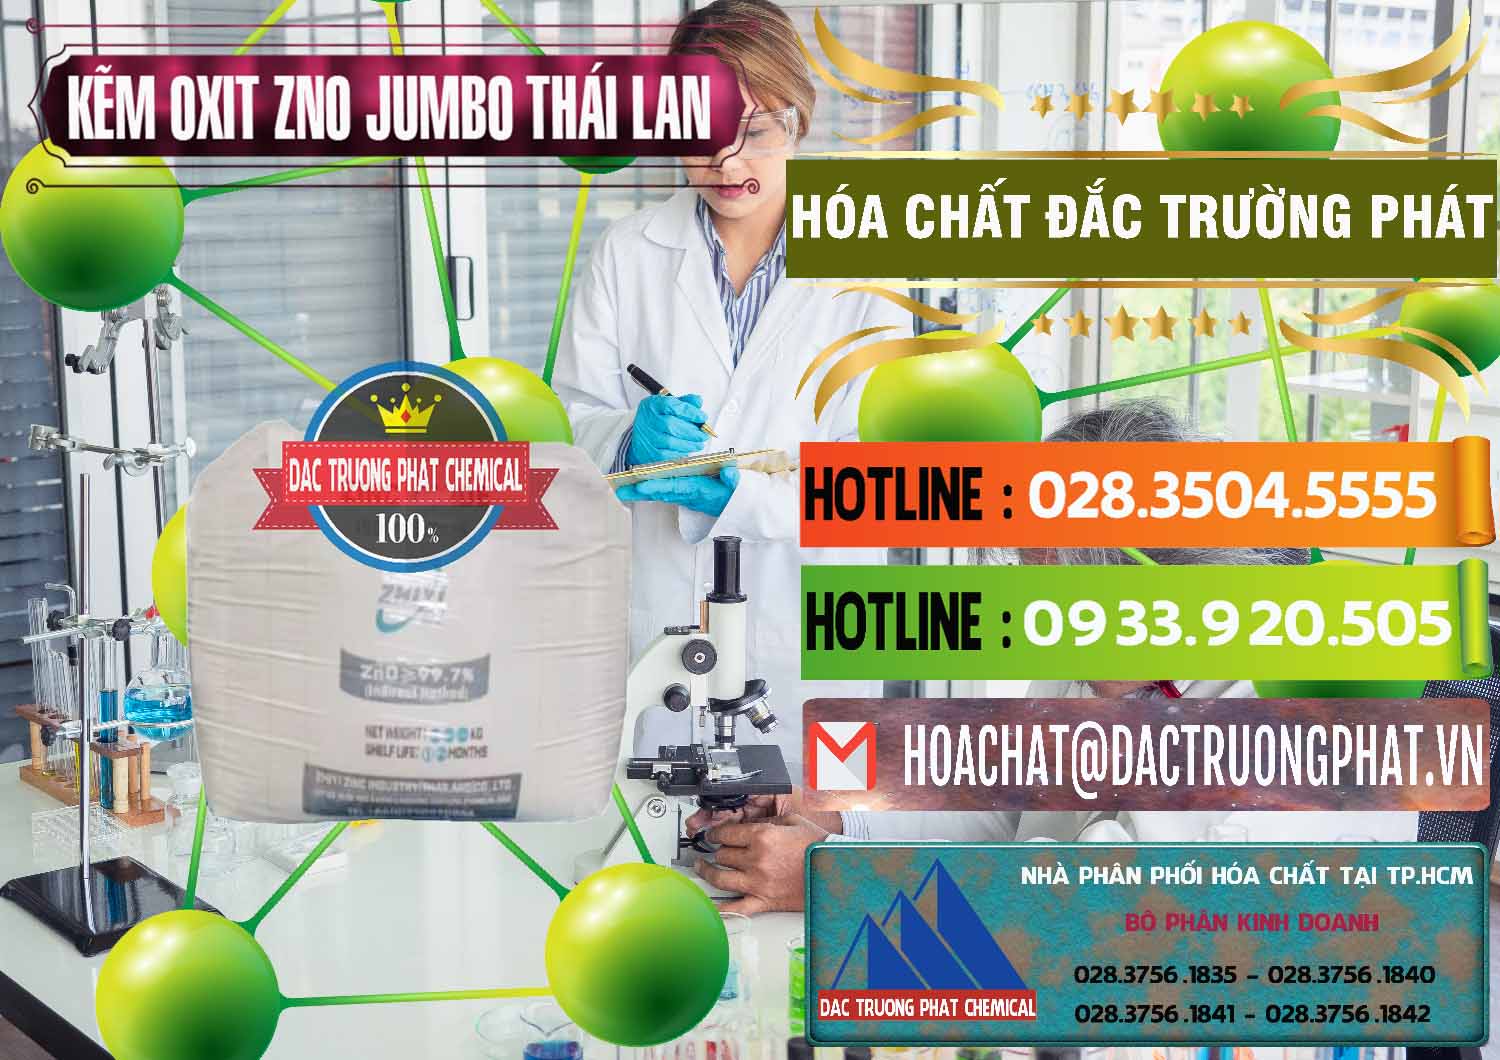 Công ty chuyên cung ứng _ bán Zinc Oxide - Bột Kẽm Oxit ZNO Jumbo Bành Thái Lan Thailand - 0370 - Cty cung cấp & phân phối hóa chất tại TP.HCM - cungcaphoachat.com.vn